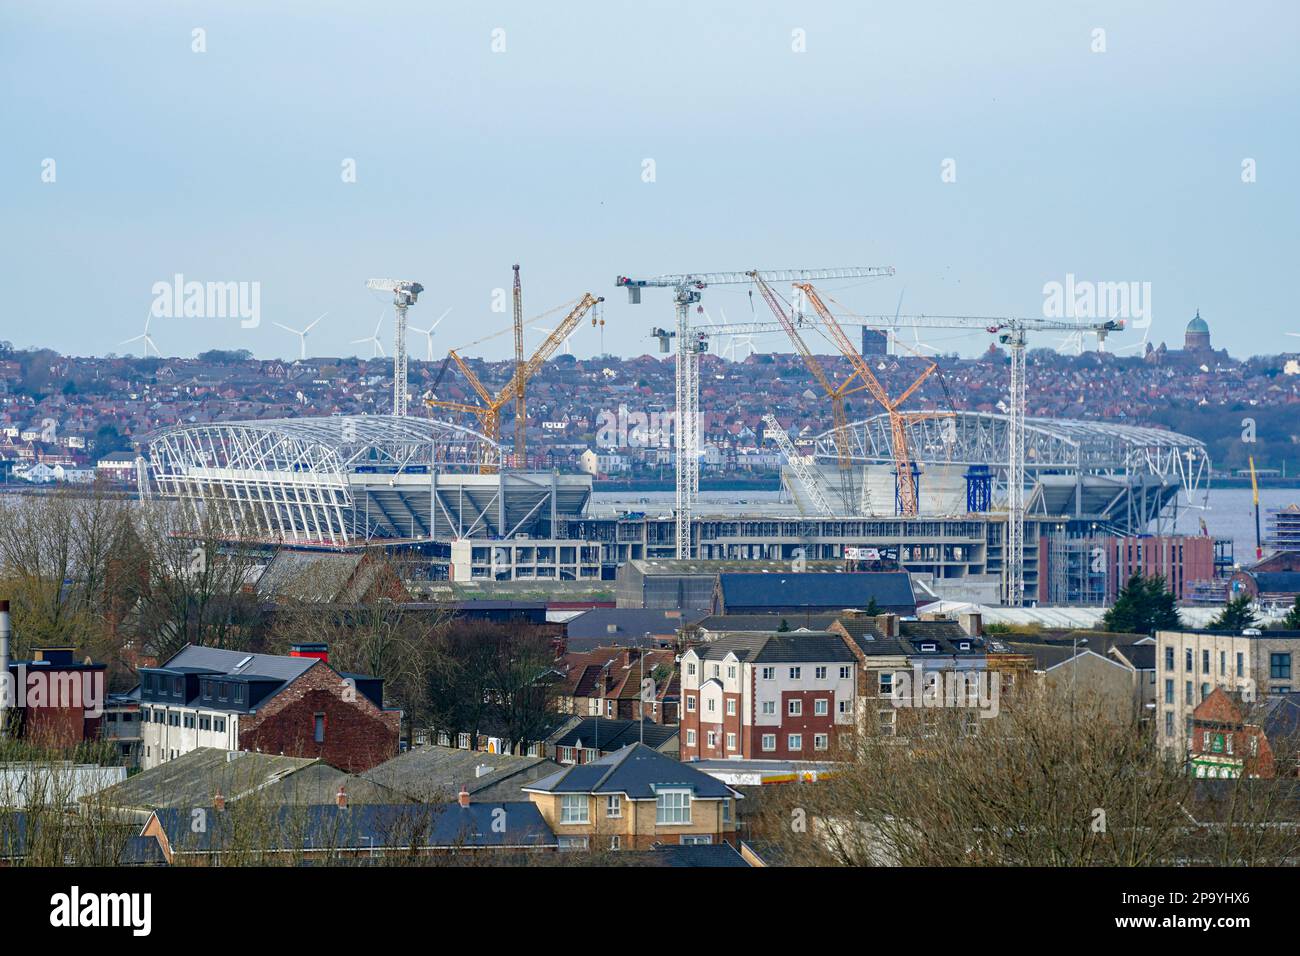 La nouvelle construction du stade Bramley Moore des clubs de football d'Everton domine la ville de Liverpool. Date de la photo: Samedi 11 mars 2023. Banque D'Images